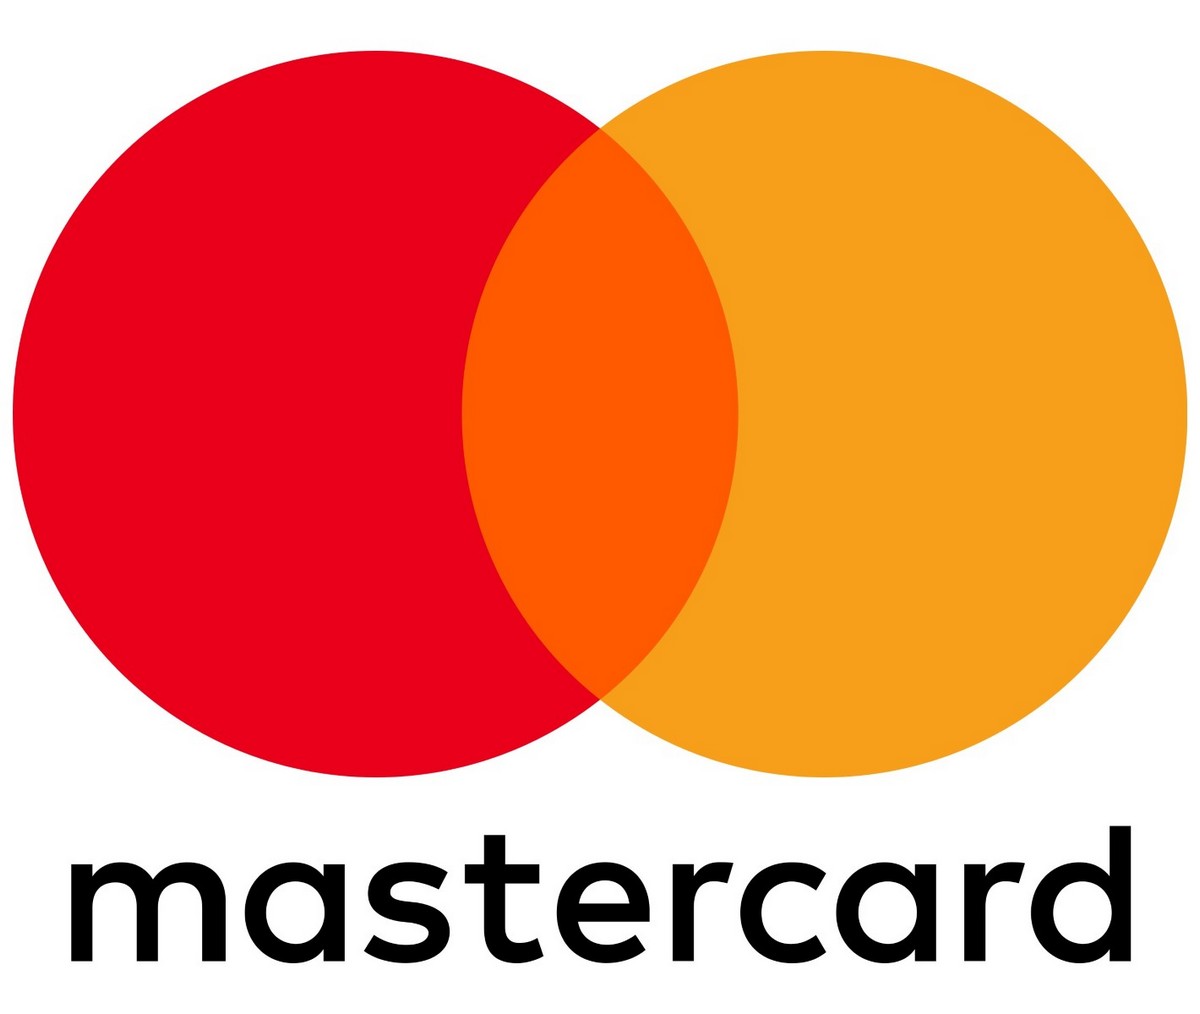 А Mastercard в логотипе использует сочетание двух ярких цветов — оранжевого и красного. Фирменные цвета отличают Mastercard от других крупных платёжных систем, использующих в качестве корпоративного синий цвет: Visa, PayPal, American Express, Webmoney